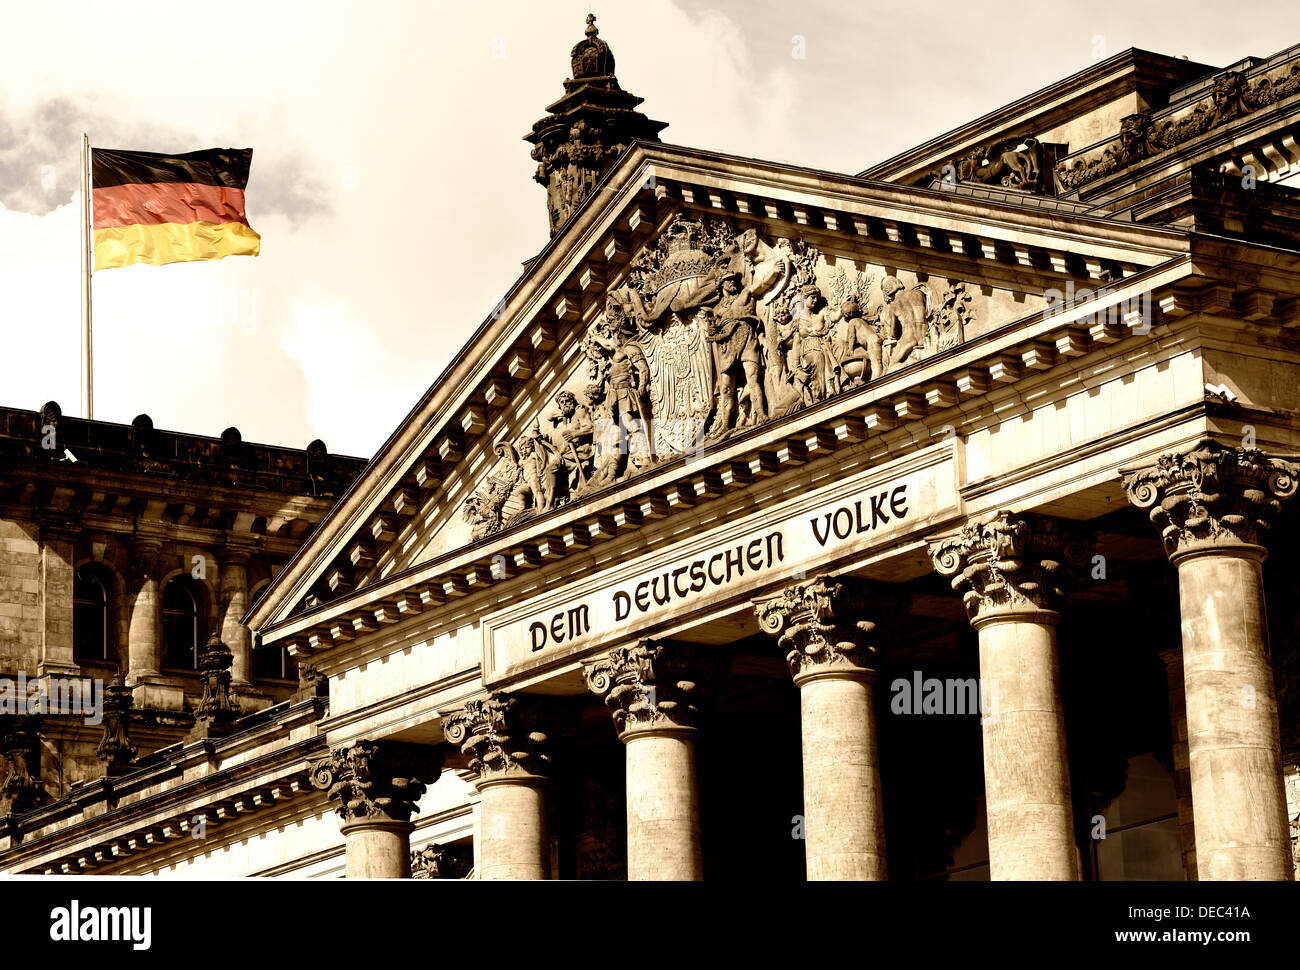 Bandiera tedesca battenti presso l'Edificio del Reichstag tedesco del parlamento federale, con l'iscrizione "em Deutschen Volke', Foto Stock